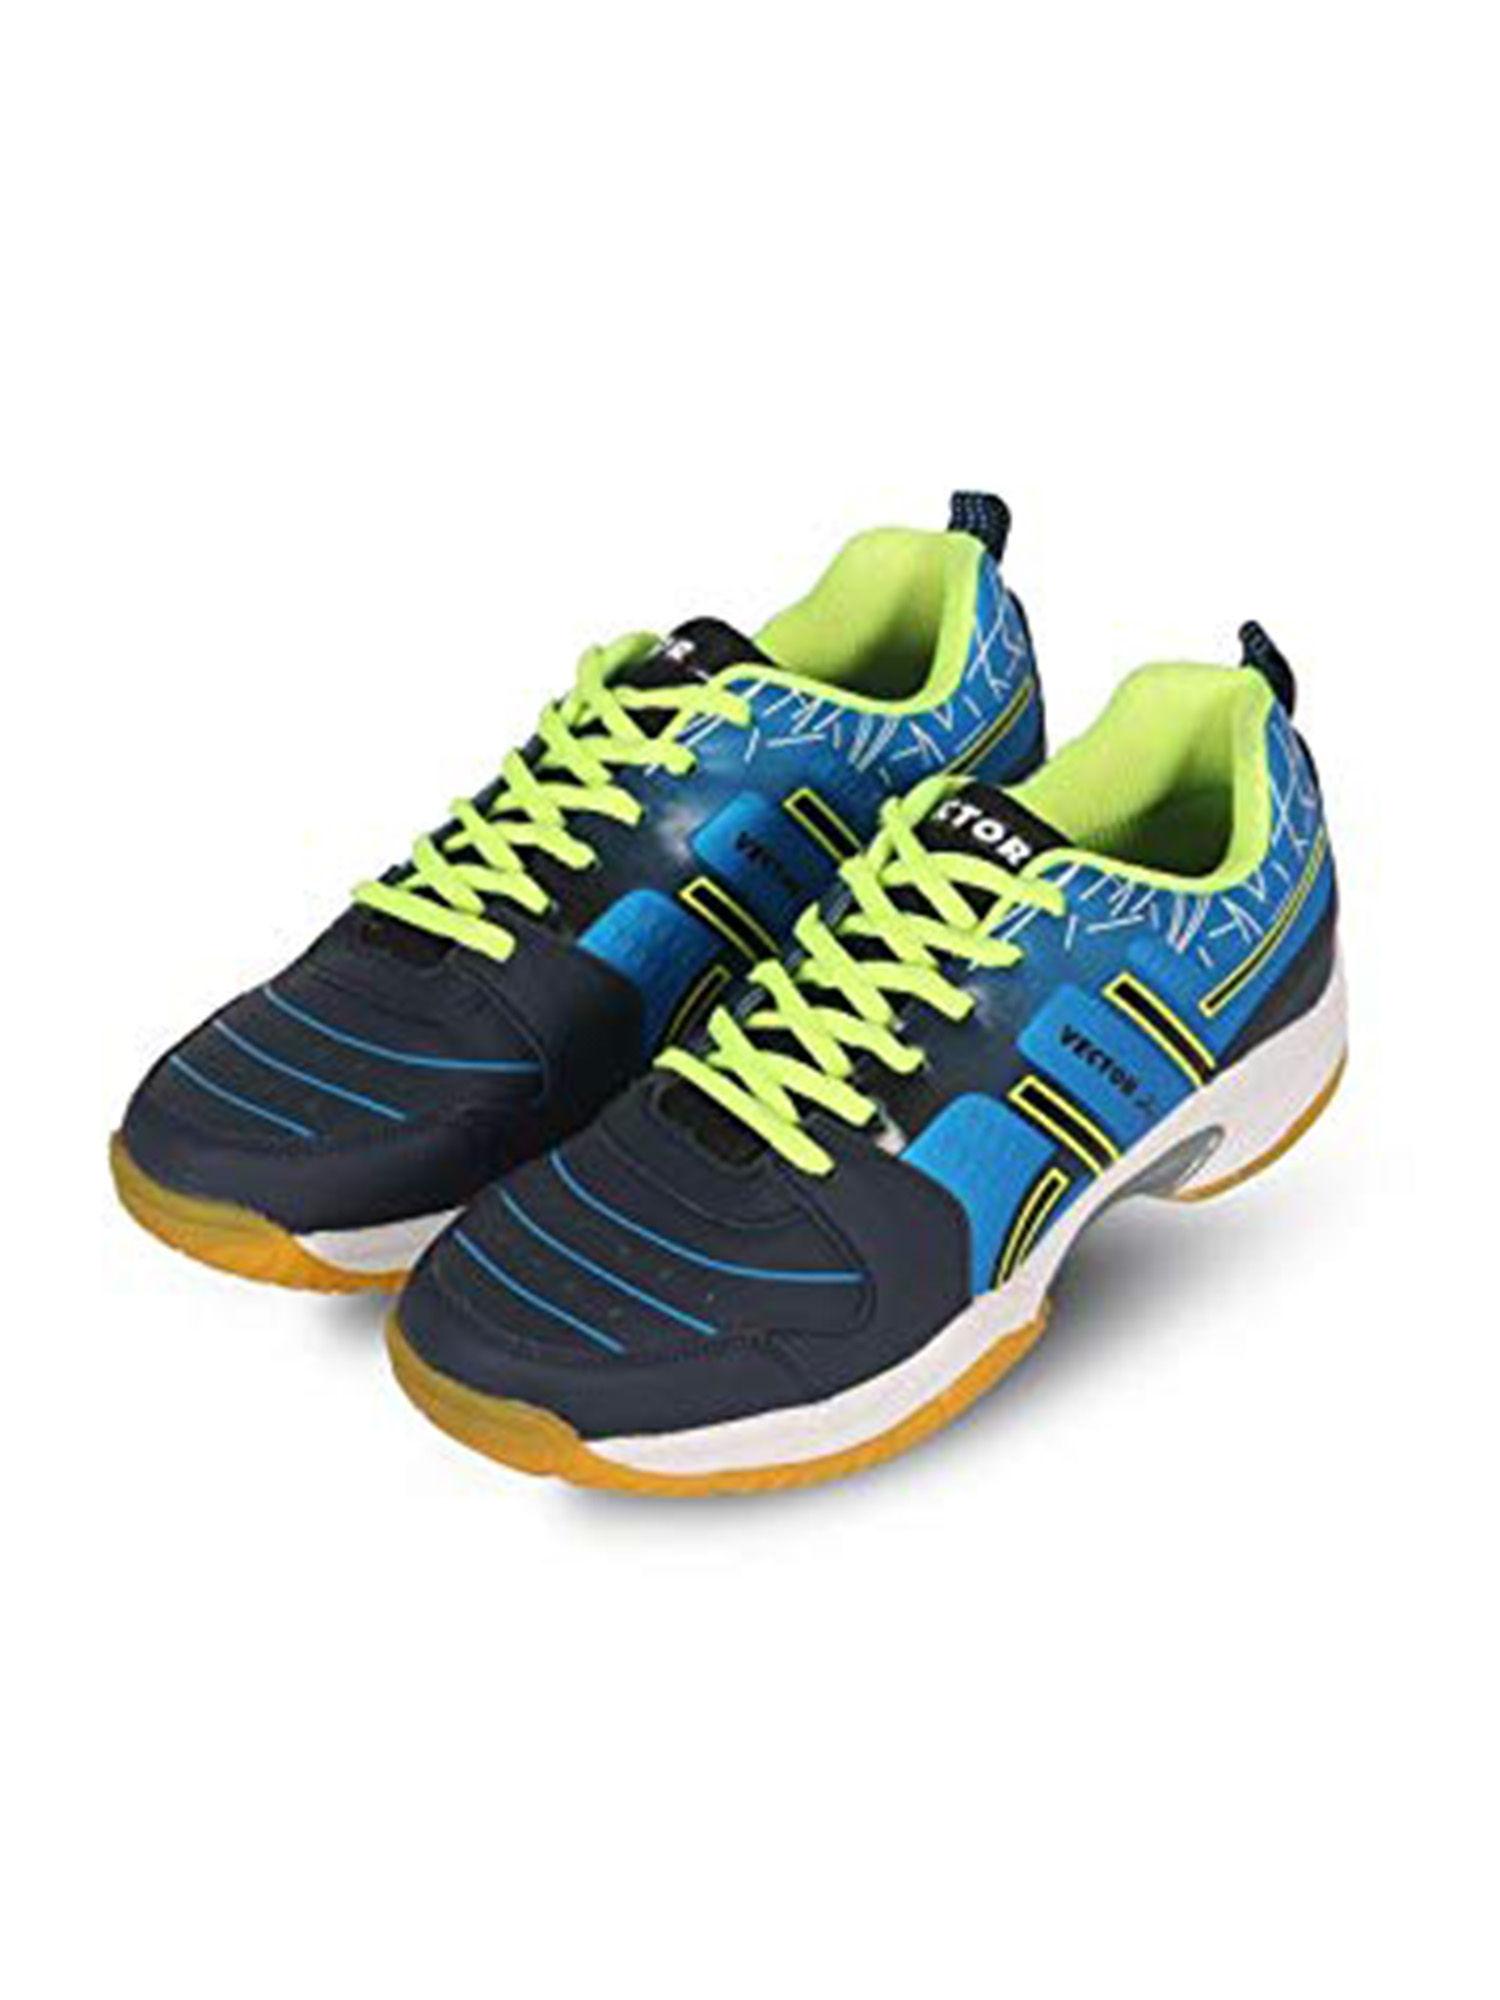 cs-2000-court-shoes-for-men-(multicolor)